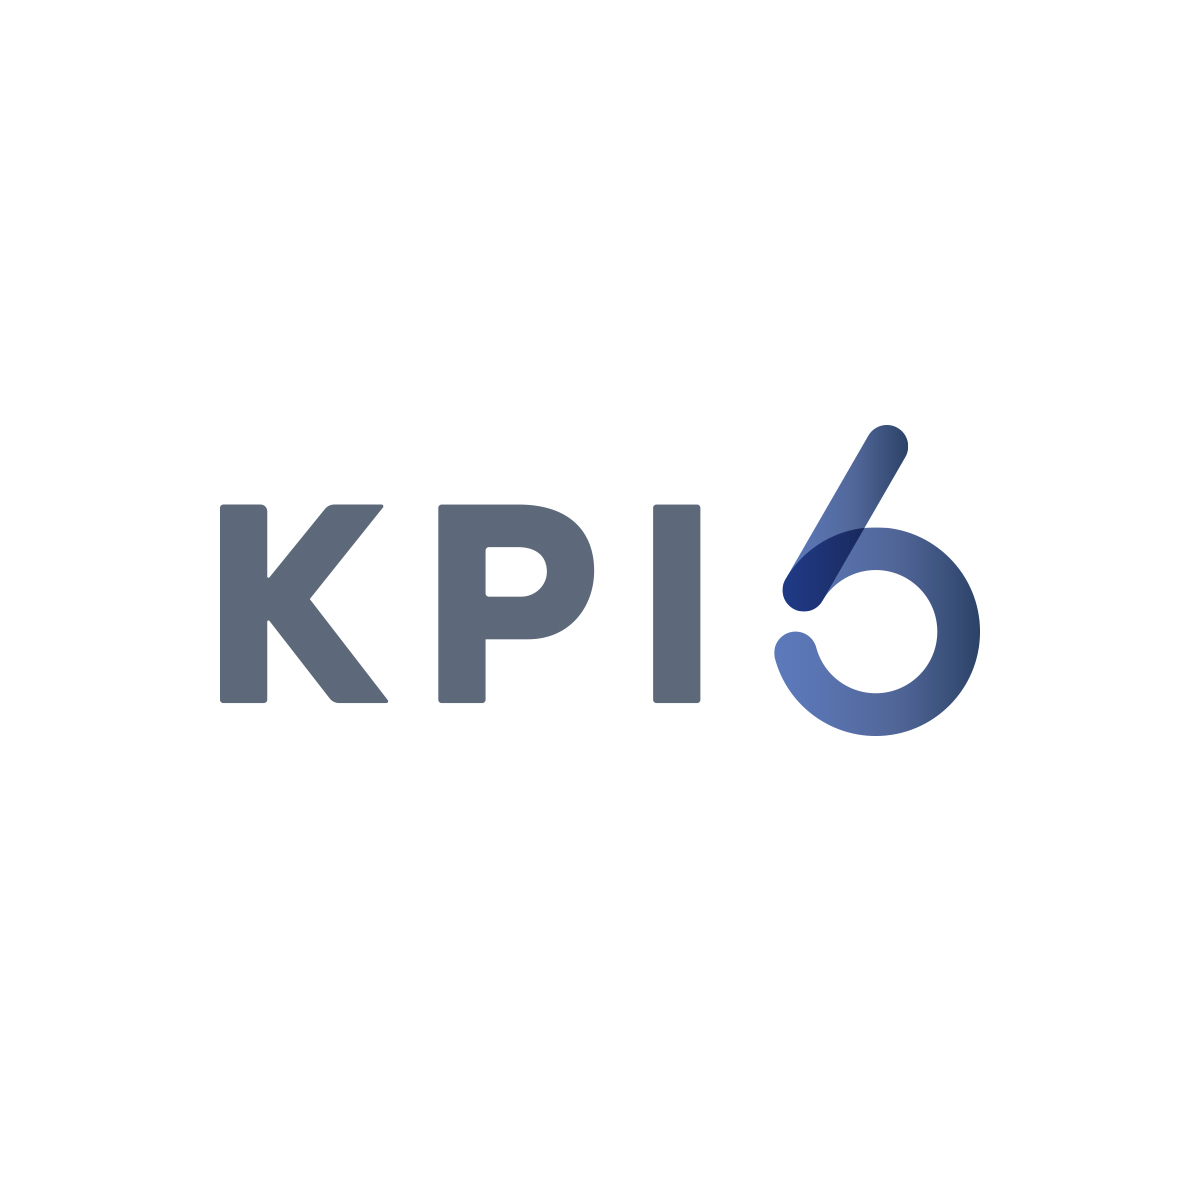 KPI 6